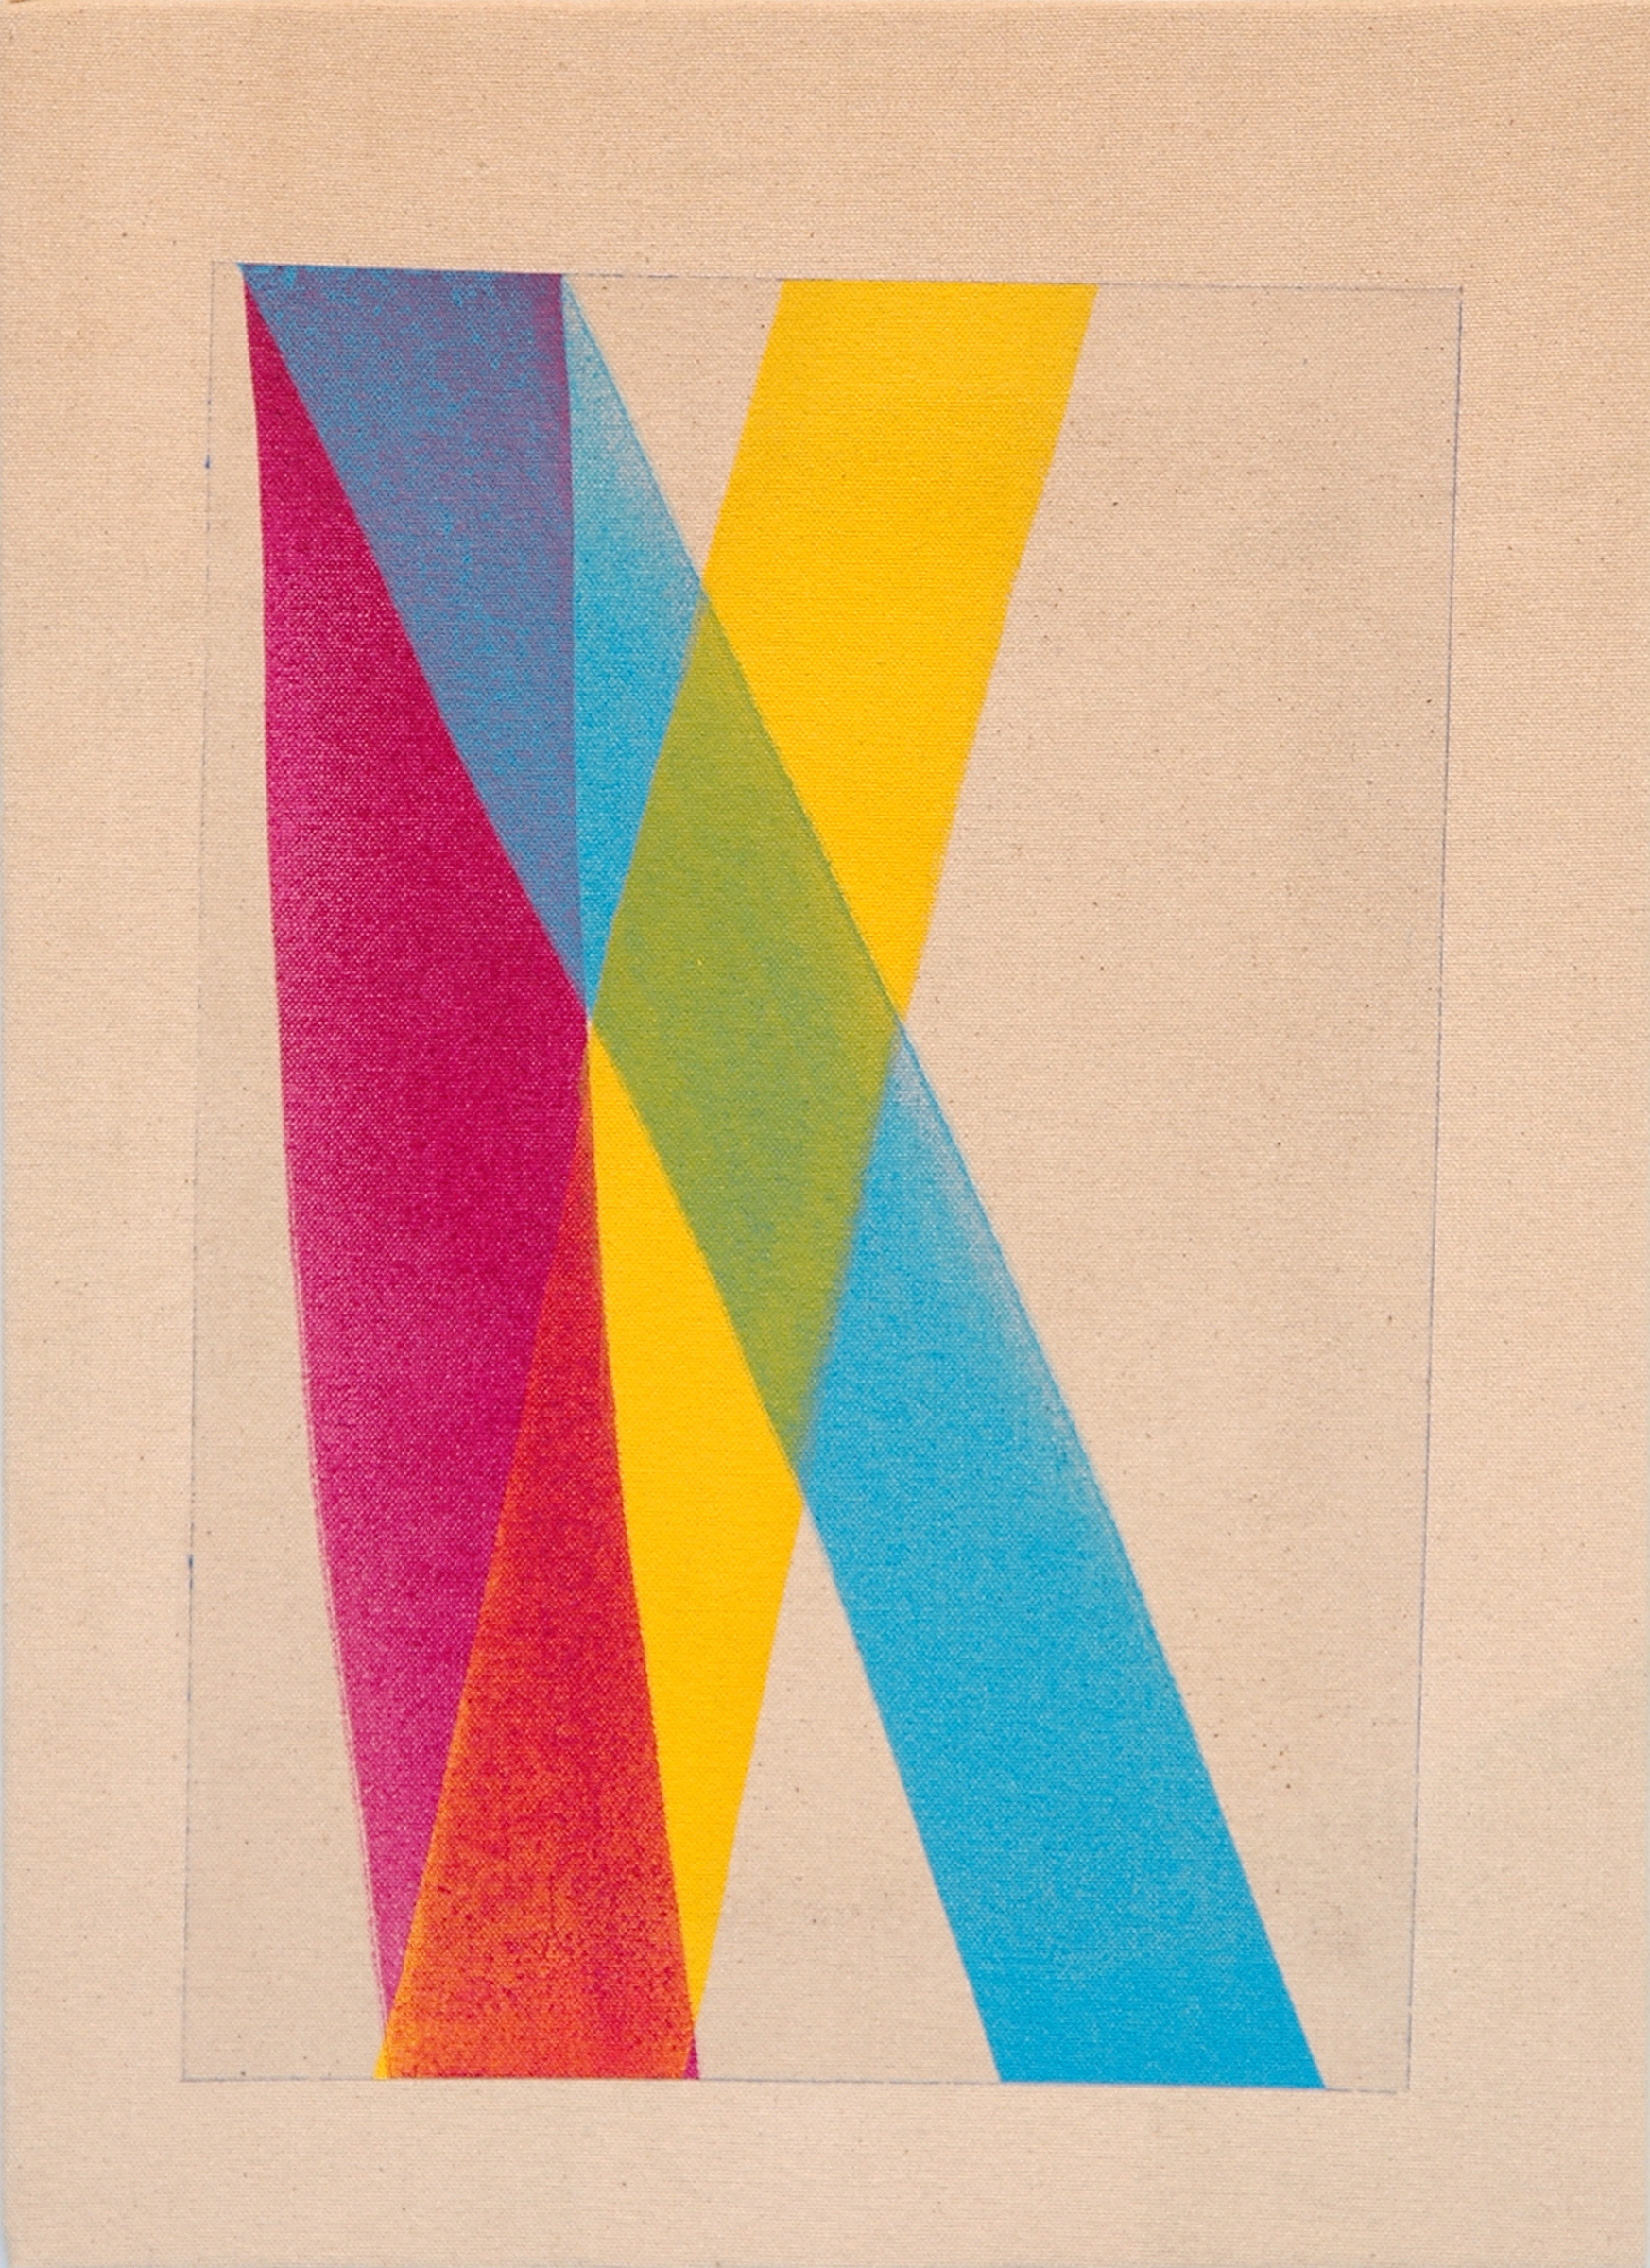   AMANDA CURRERI   Untitled , acrylic on dyed fabric, 17" x 12", 2012 